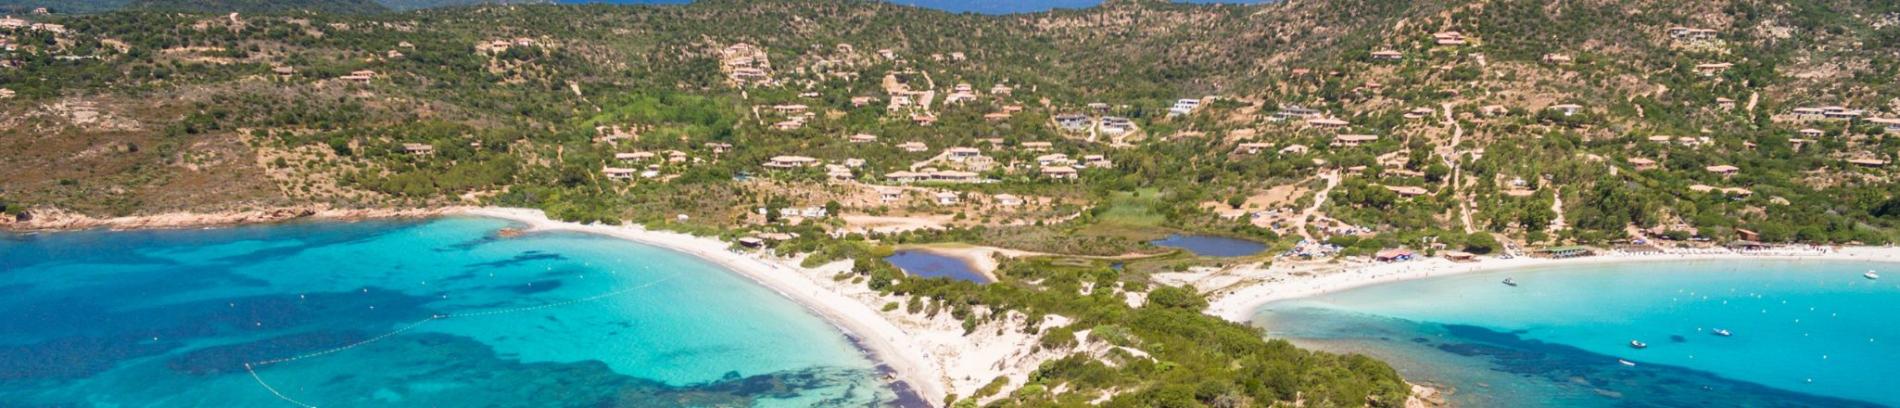 Slide Résidence Sognu Di Rena à Moriani - Plages sauvages en Corse